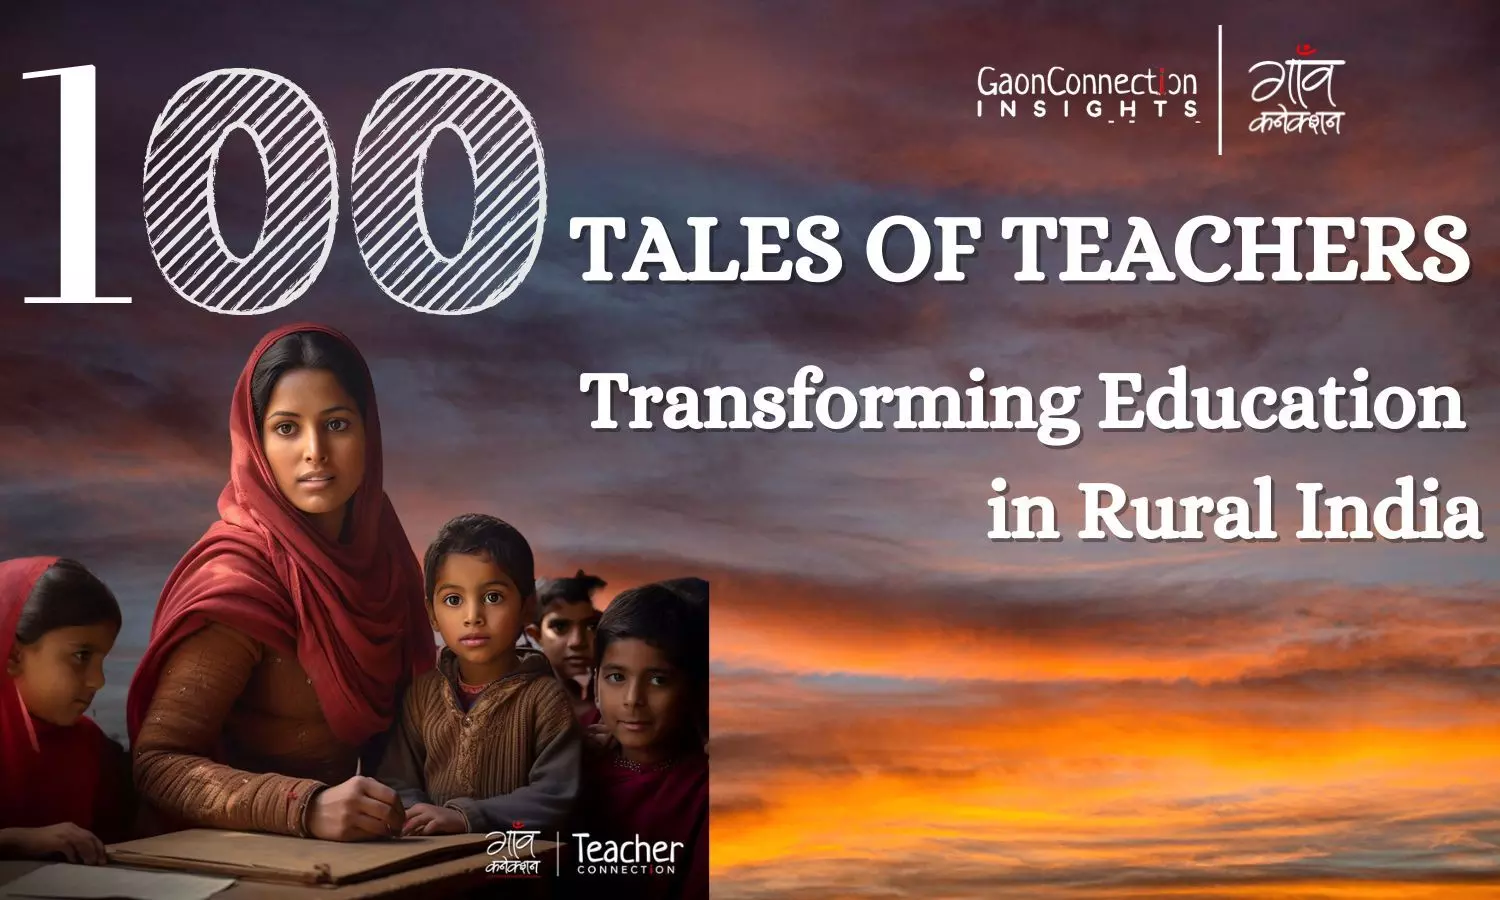 गाँव कनेक्शन की ओर से ग्रामीण शिक्षकों को समर्पित एक किताब, शिक्षक दिवस पर किया जाएगा लॉन्च